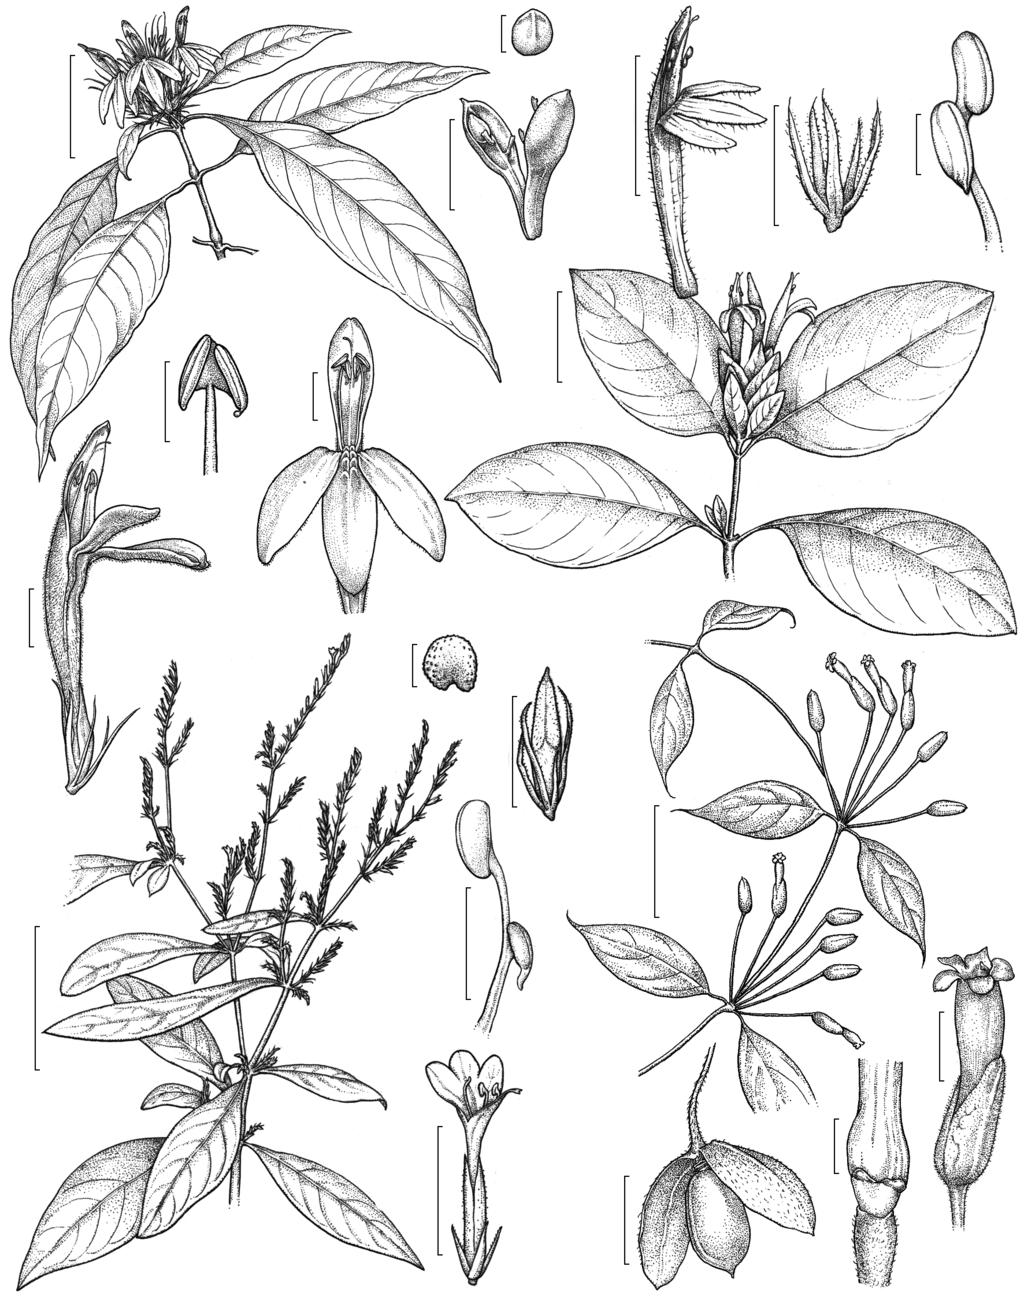 Acanthaceae de Carajás a f 6 cm 3 mm 895 e h j 4 mm 3 cm i d g 1 mm c o b 5 cm 1 mm 5 cm n m q k p l s r Figura 3 a-f. Justicia sp. 3 a. ramo florido; b. flor; c.